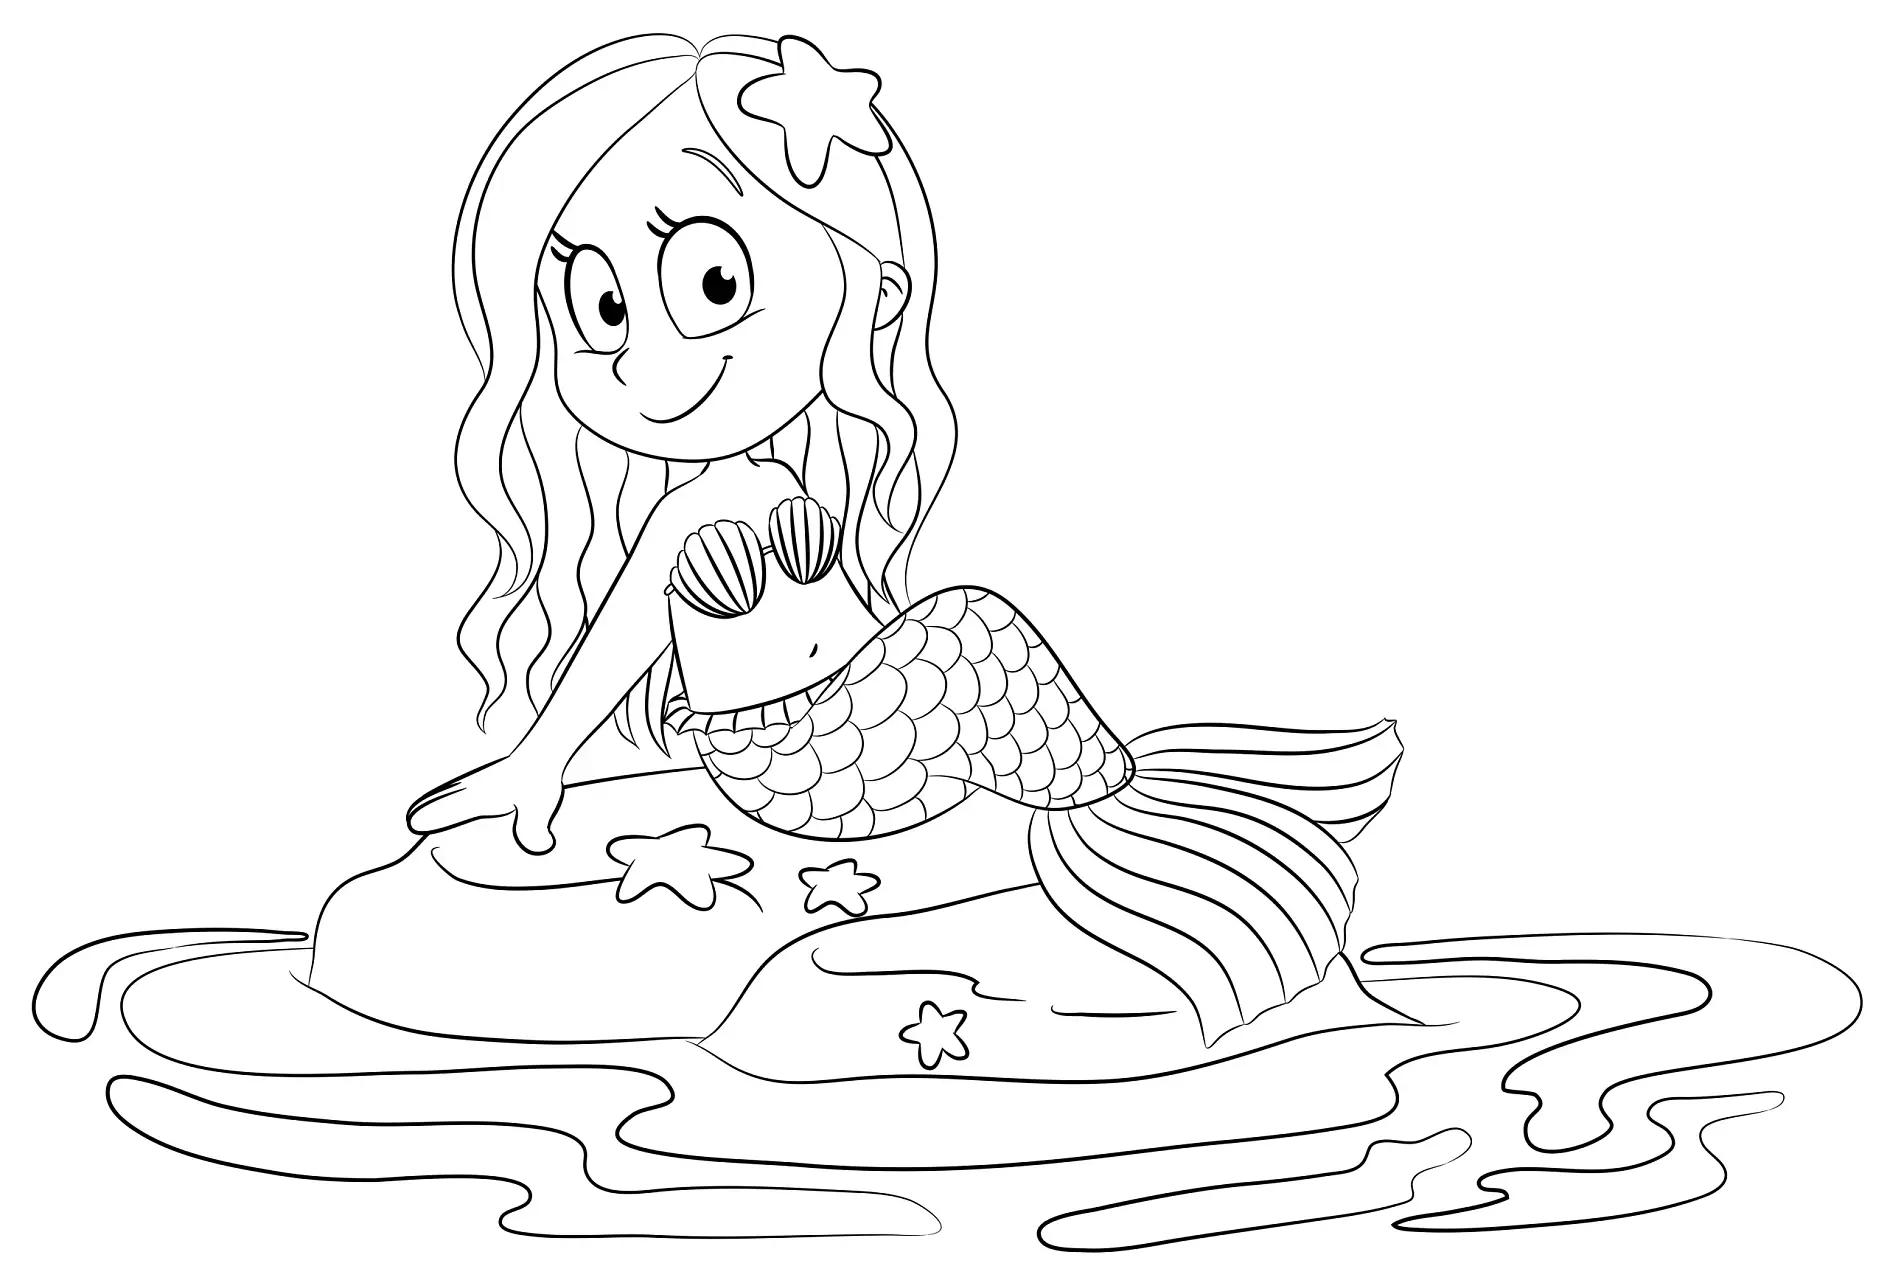 Ausmalbild Meerjungfrau sitzt auf einem Felsen im Wasser und lächelt